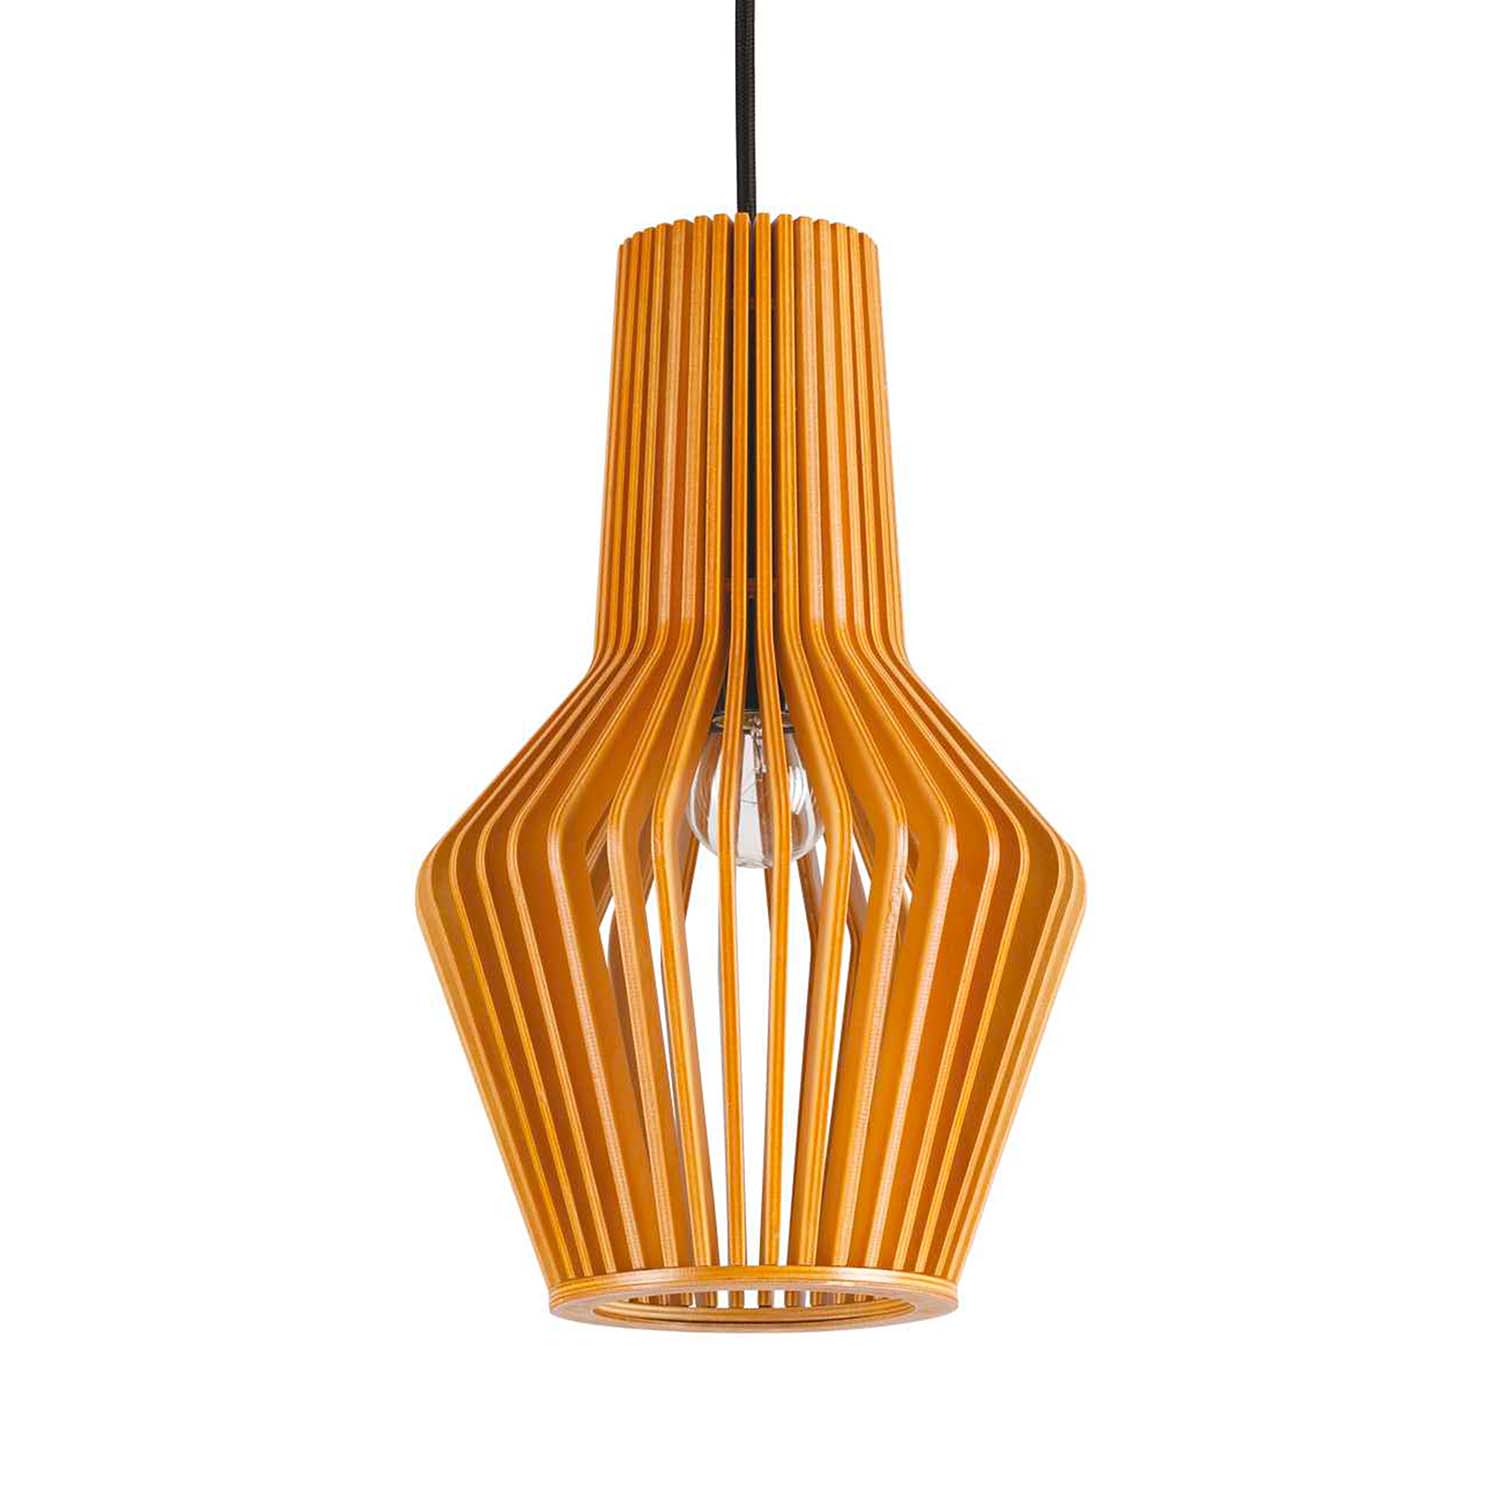 CITRUS - Pendant light in designer wooden slats